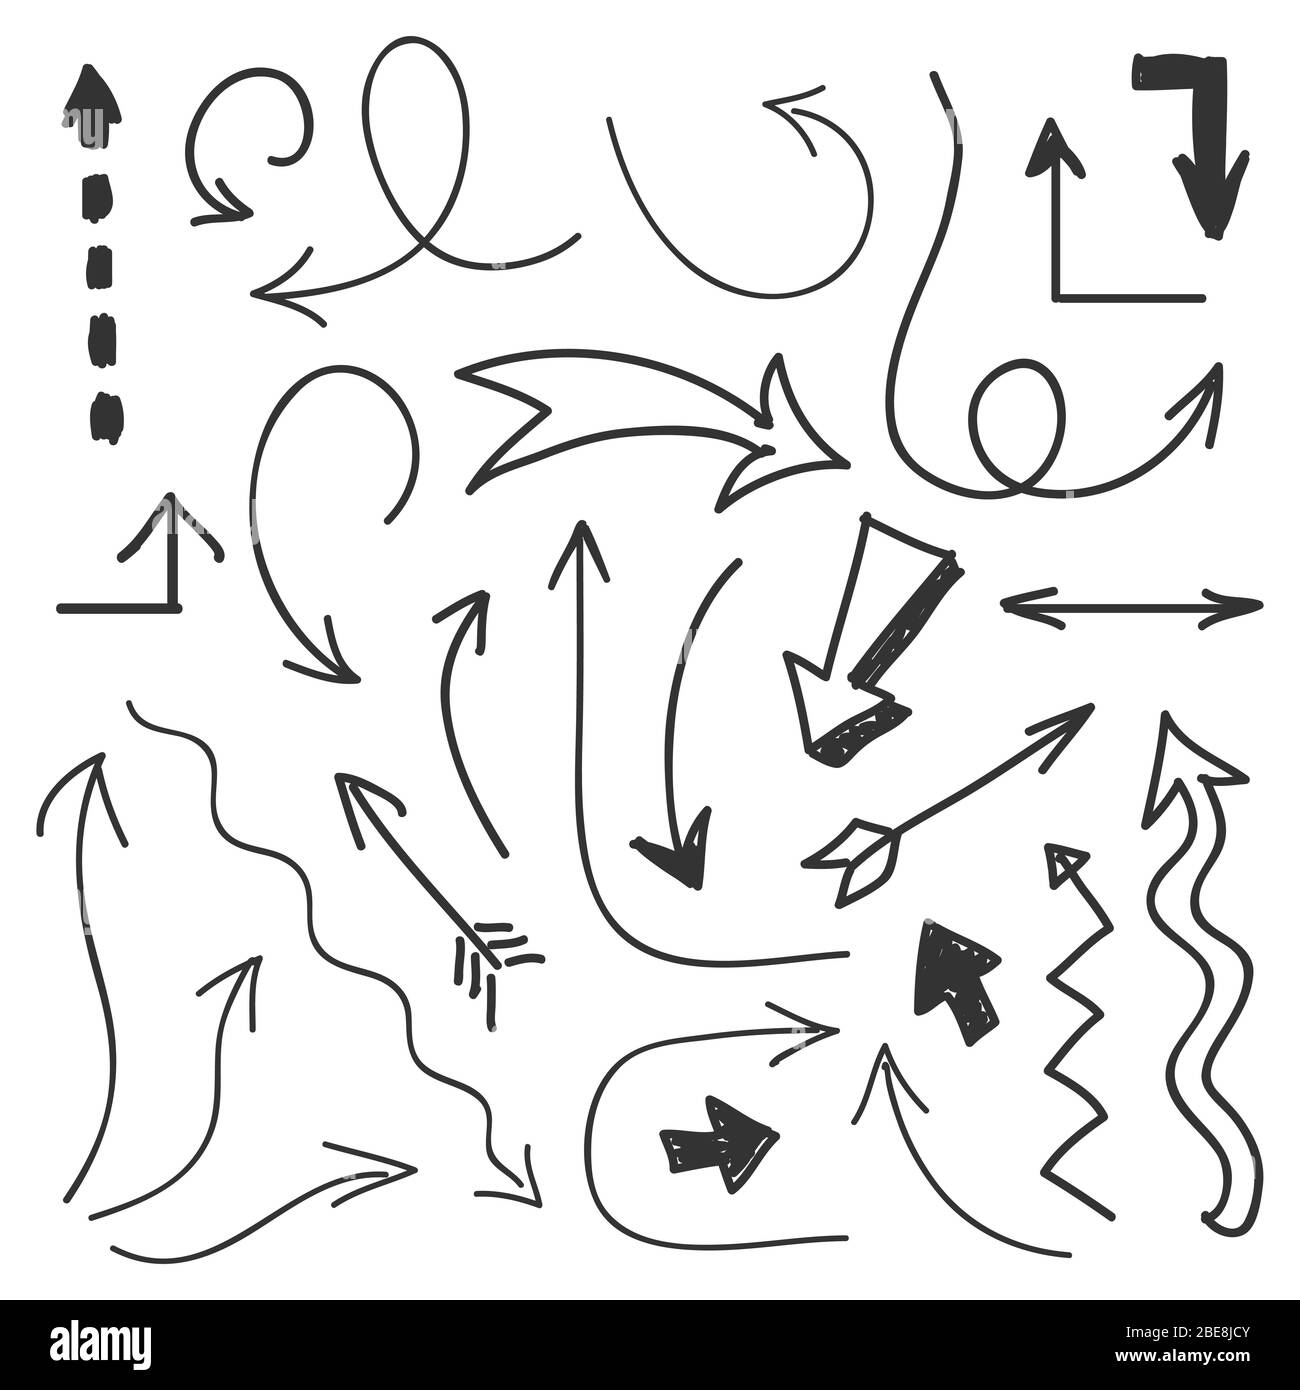 Flèches grand jeu - flèches tracées à la main isolées sur fond blanc. Flèche d'icône de dessin du jeu. Illustration vectorielle Illustration de Vecteur